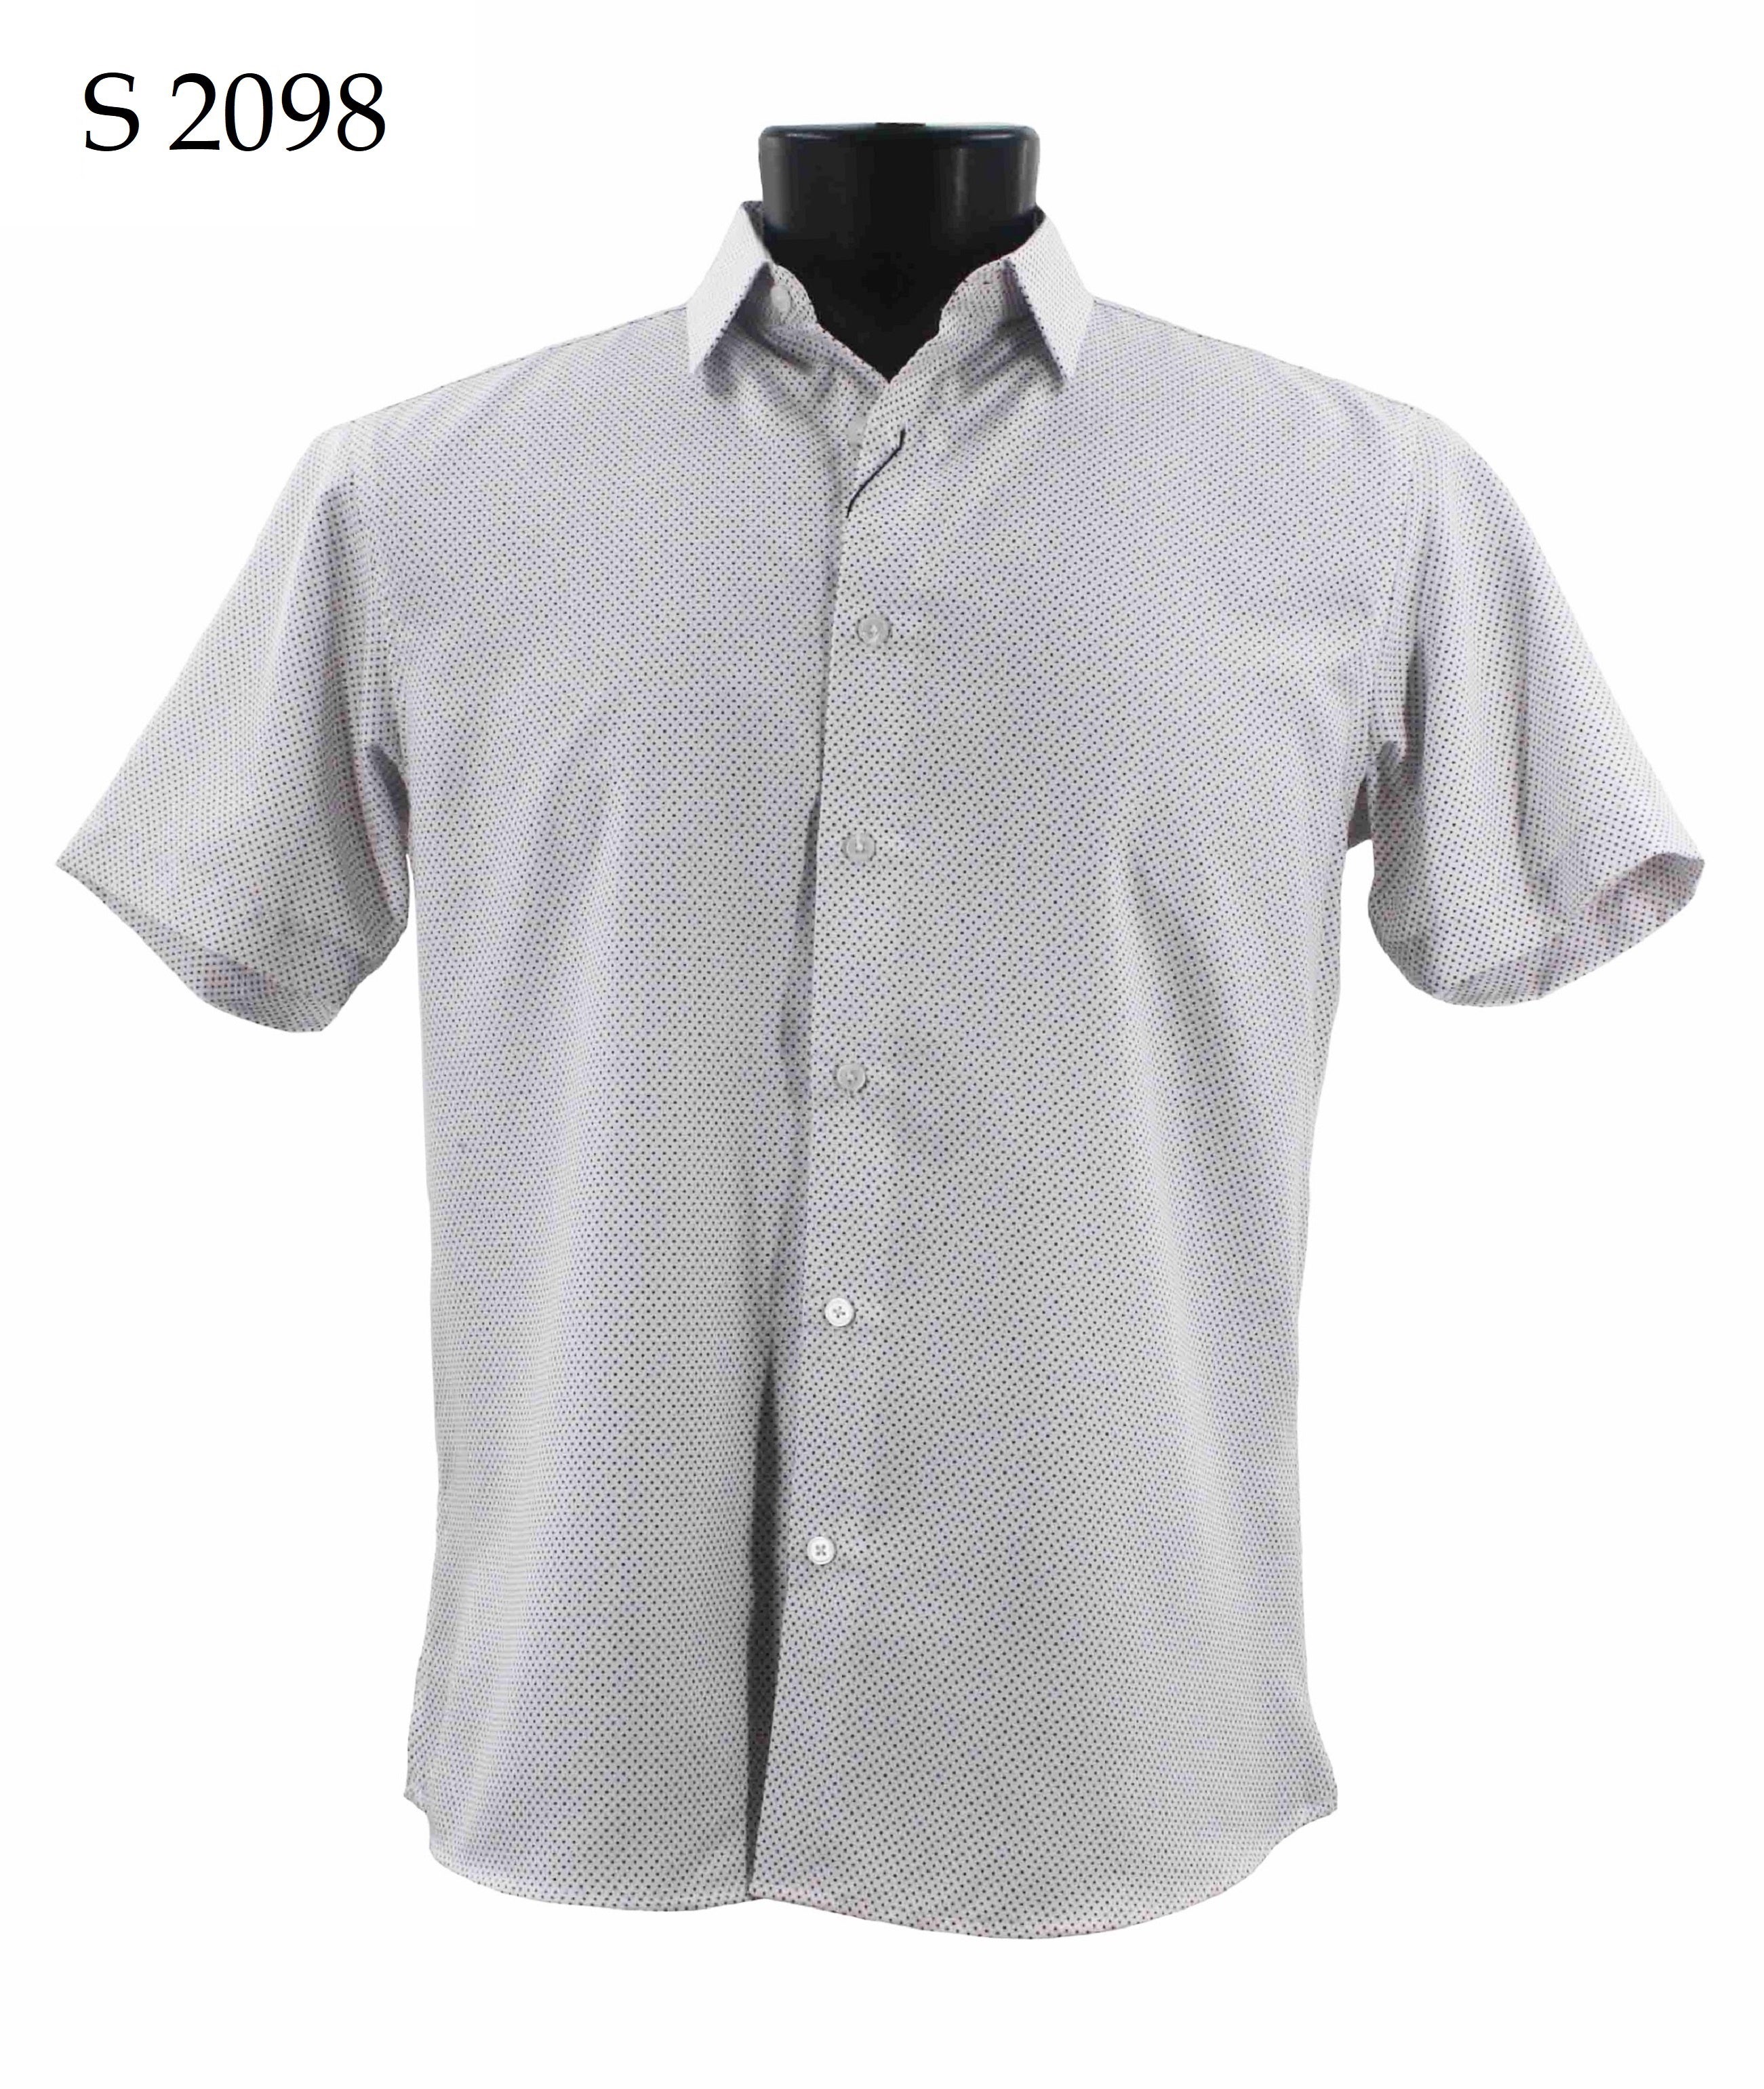 Sangi Short Sleeve Shirt S 2098